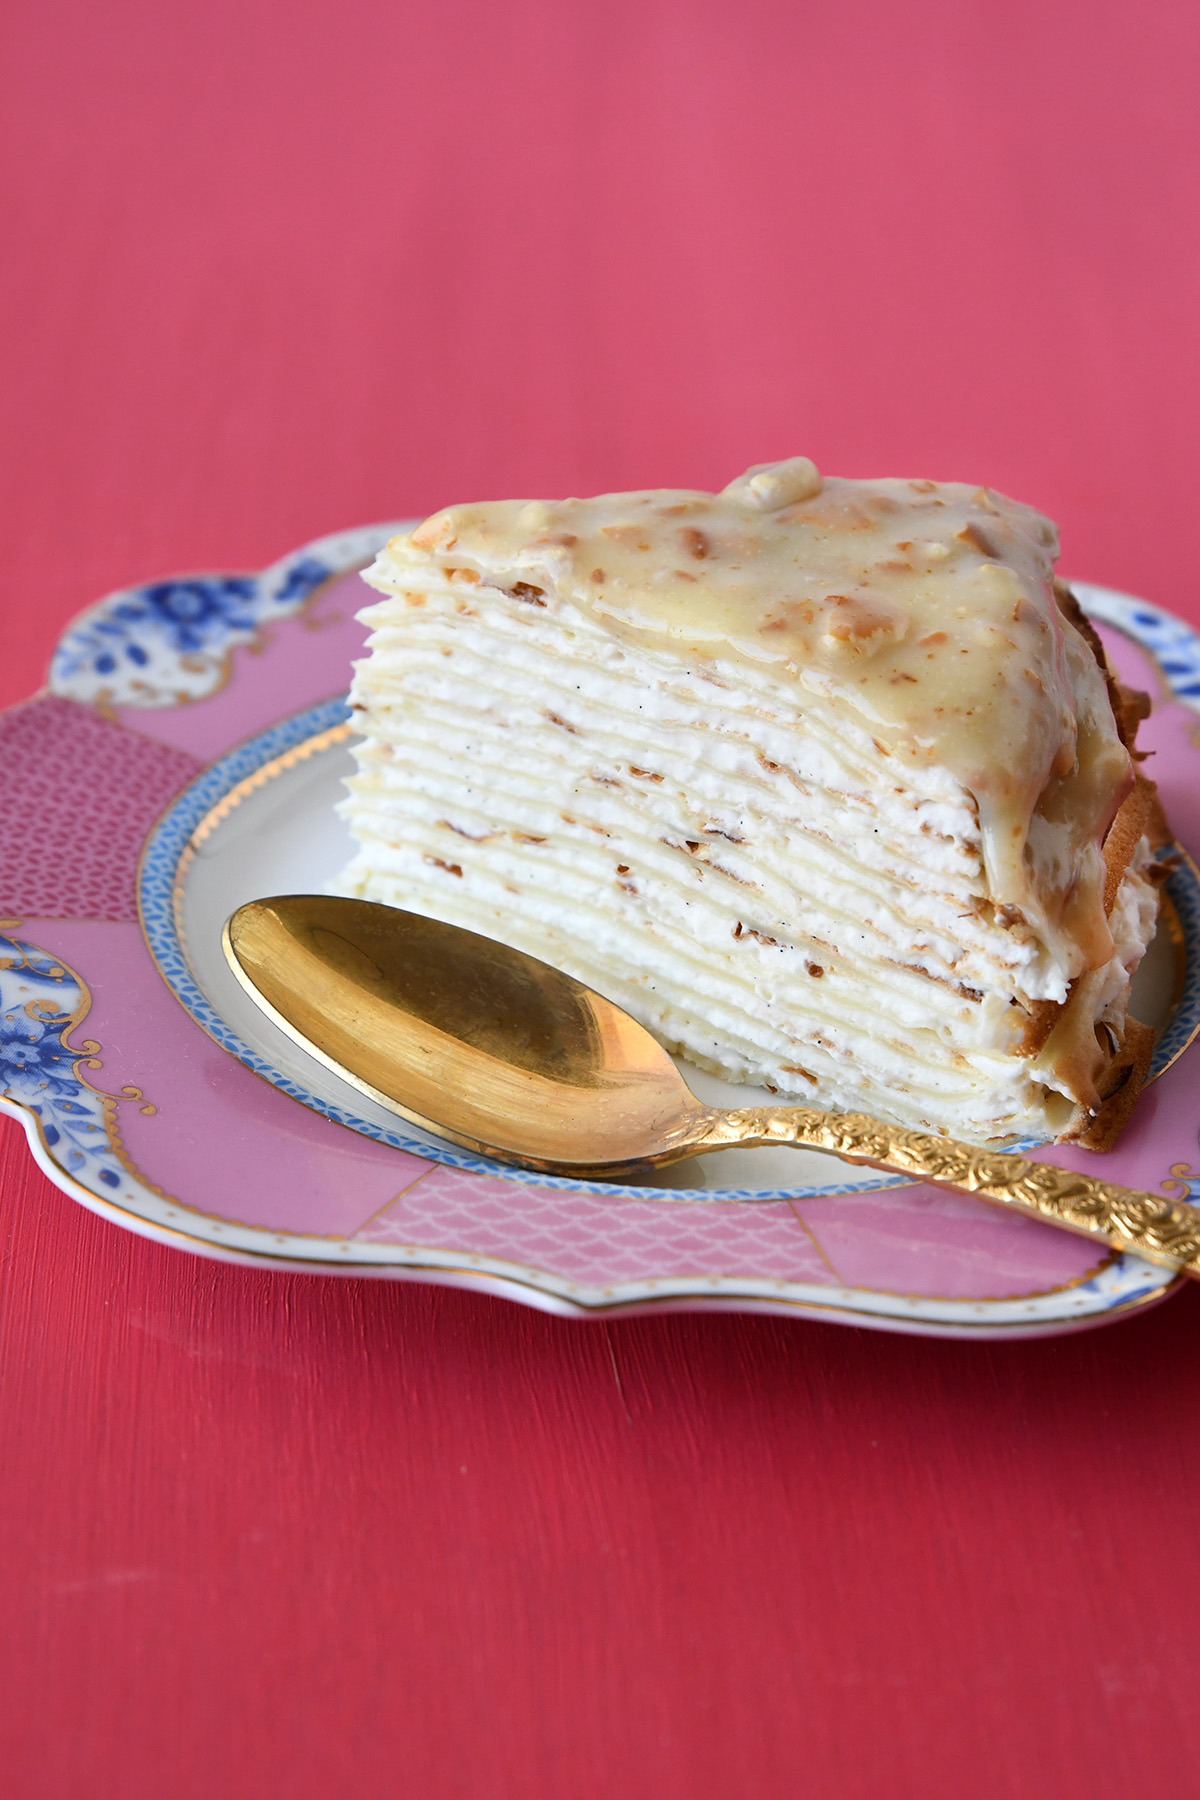 עוגת בלינצ'ס במילוי קרם גבינה עם רוטב שוקולד לבן ובייגלה מלוח